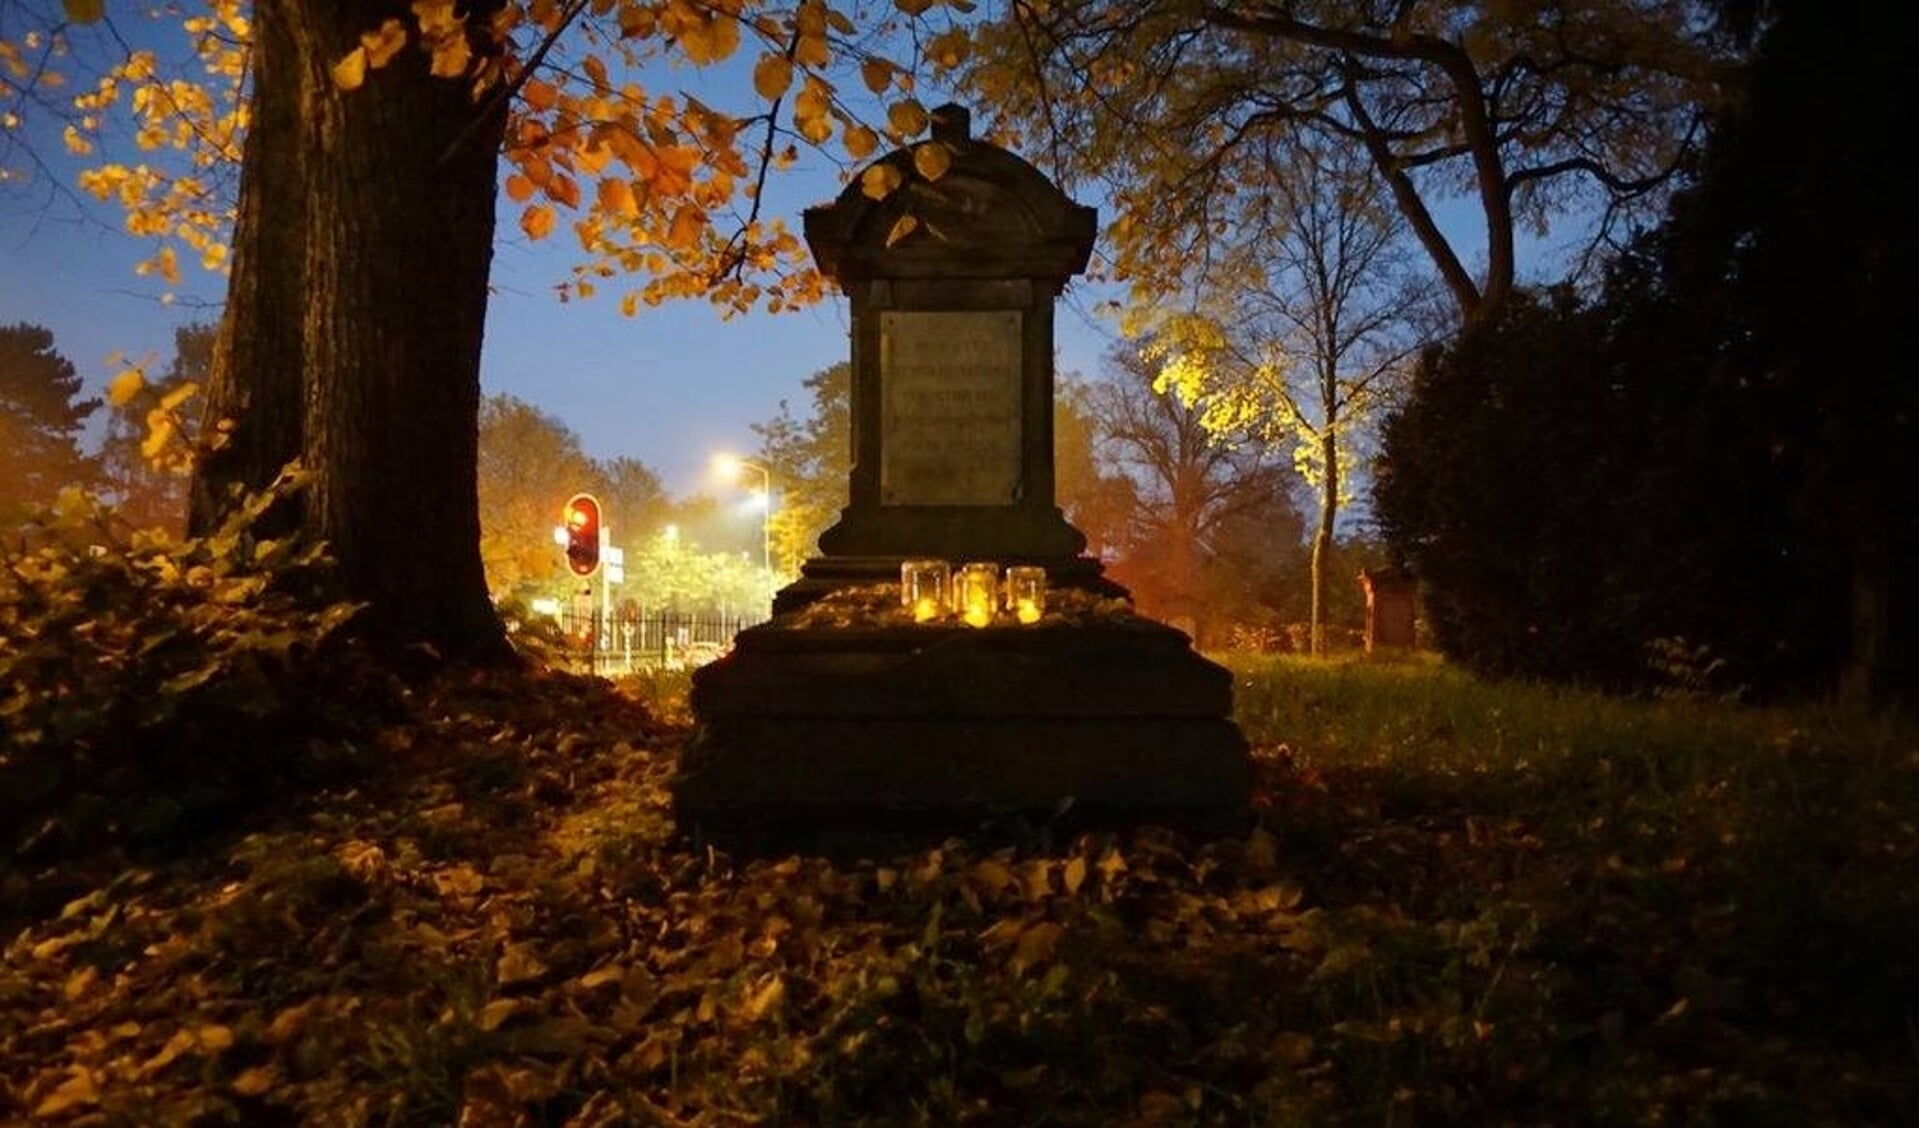 De lichtjes zorgen voor een bijzondere sfeer op de begraafplaats. Foto: PR